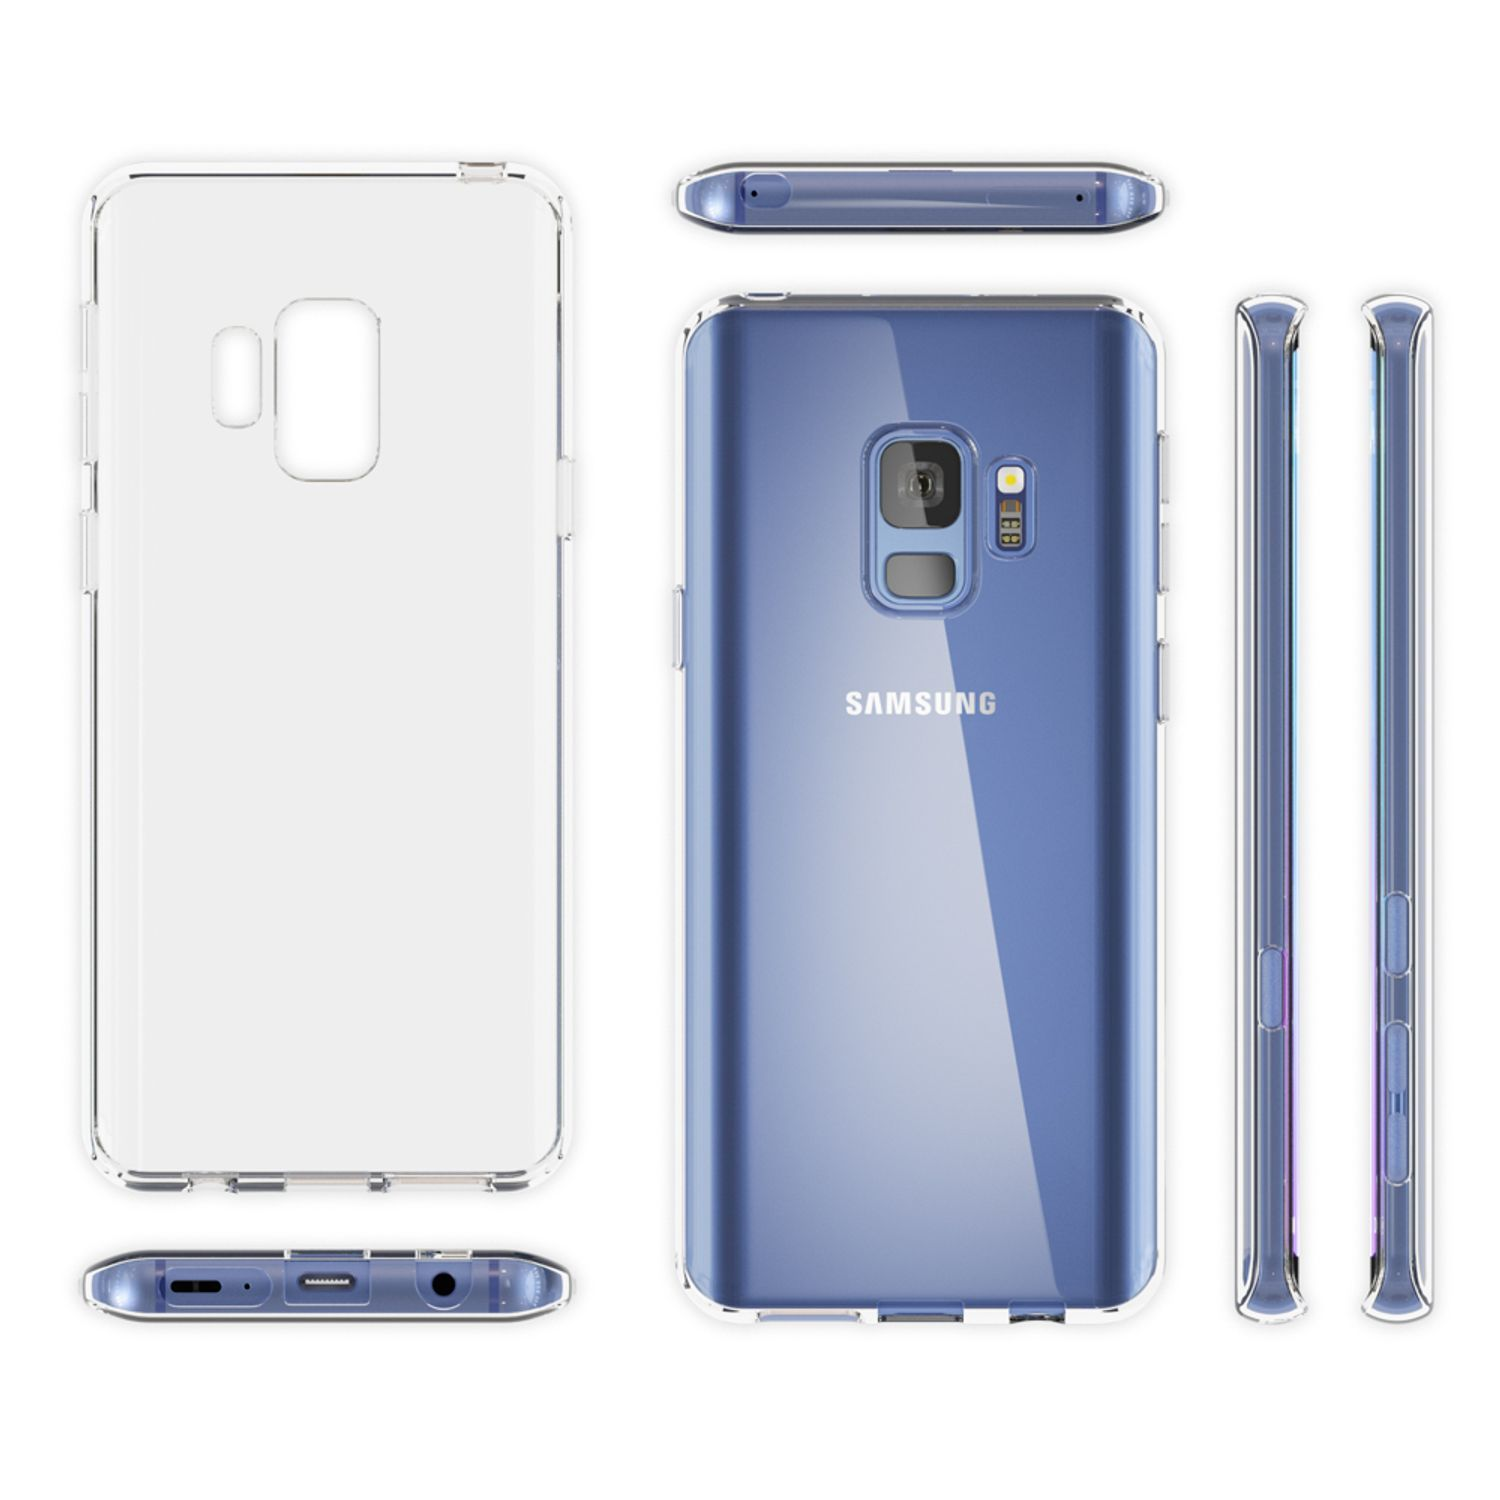 NALIA Motiv Silikon Hülle, Galaxy Backcover, S9, Samsung, Mehrfarbig